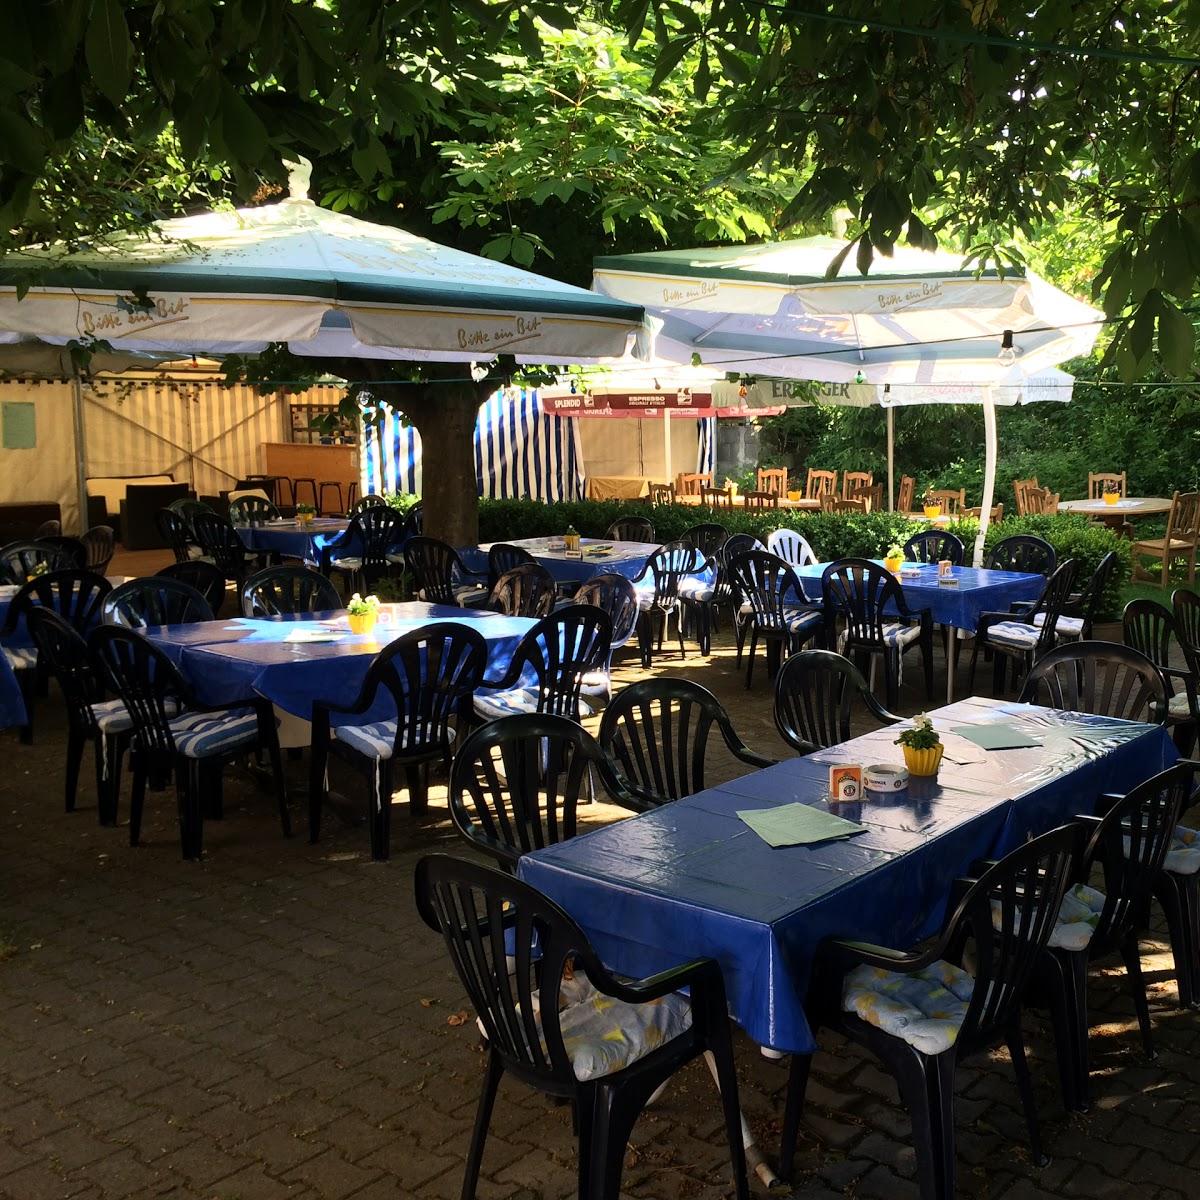 Restaurant "Gasthaus zum Lamm" in Wendlingen am Neckar